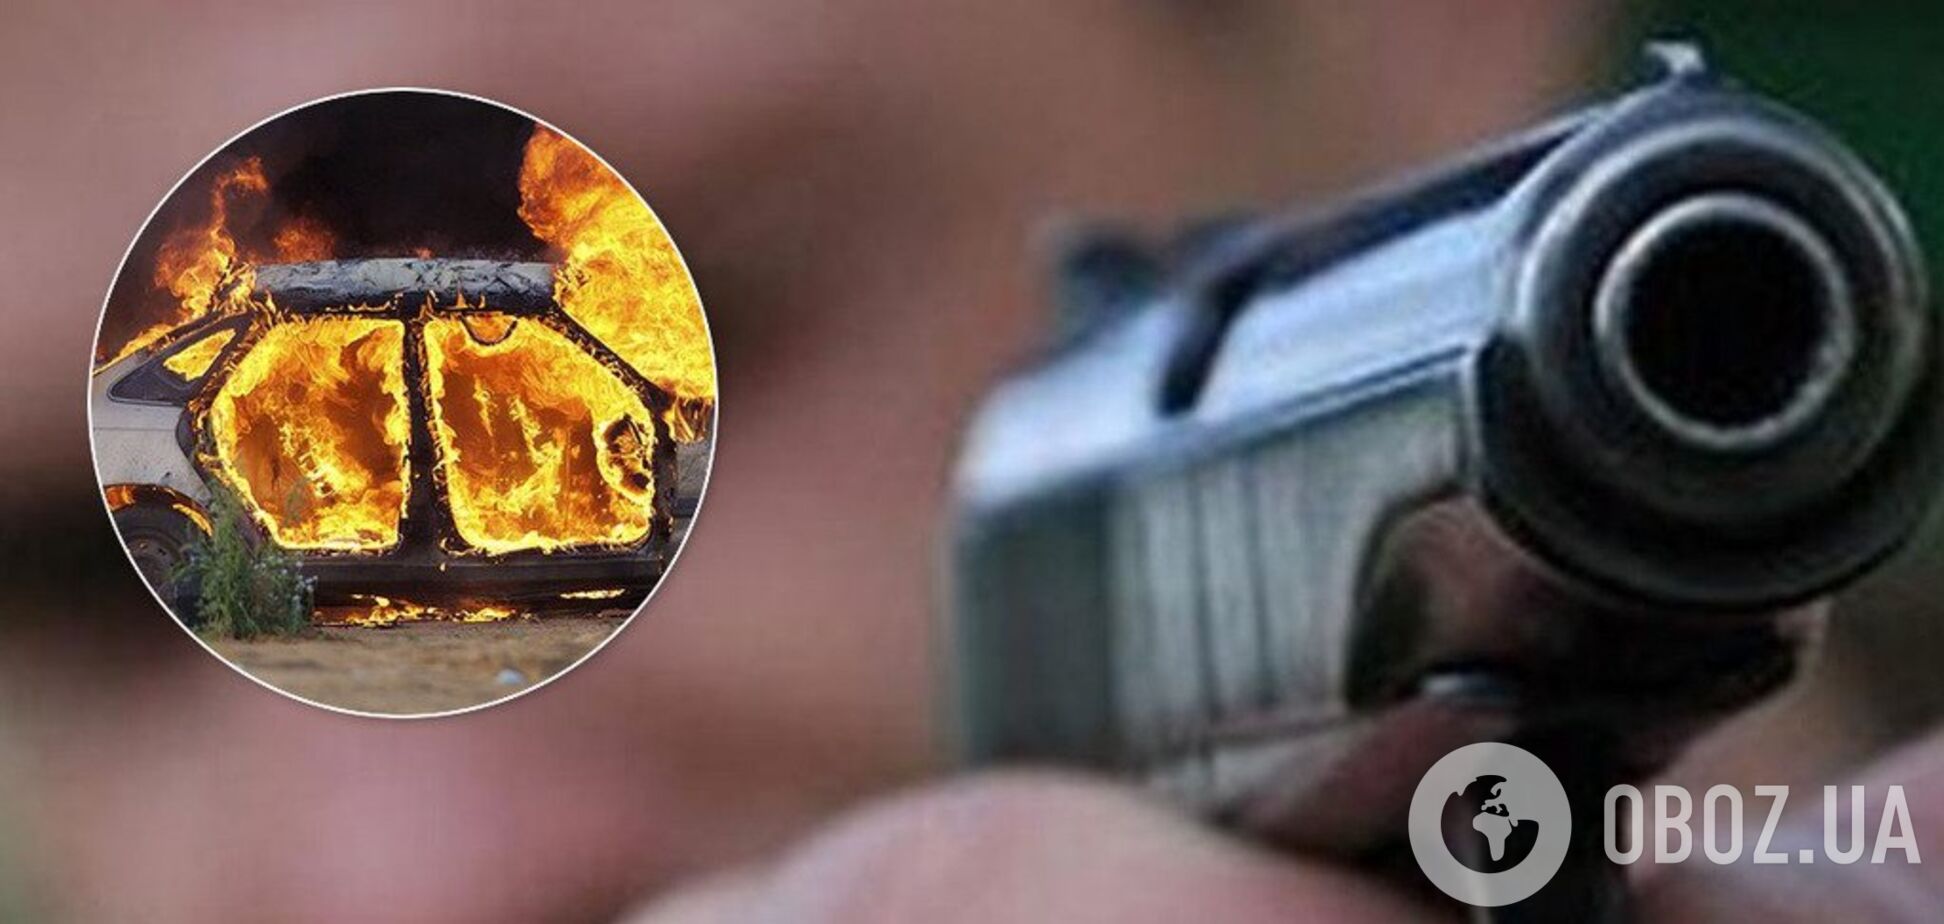 Стрельба в Гидропарке: появилось видео с подозреваемым в убийстве